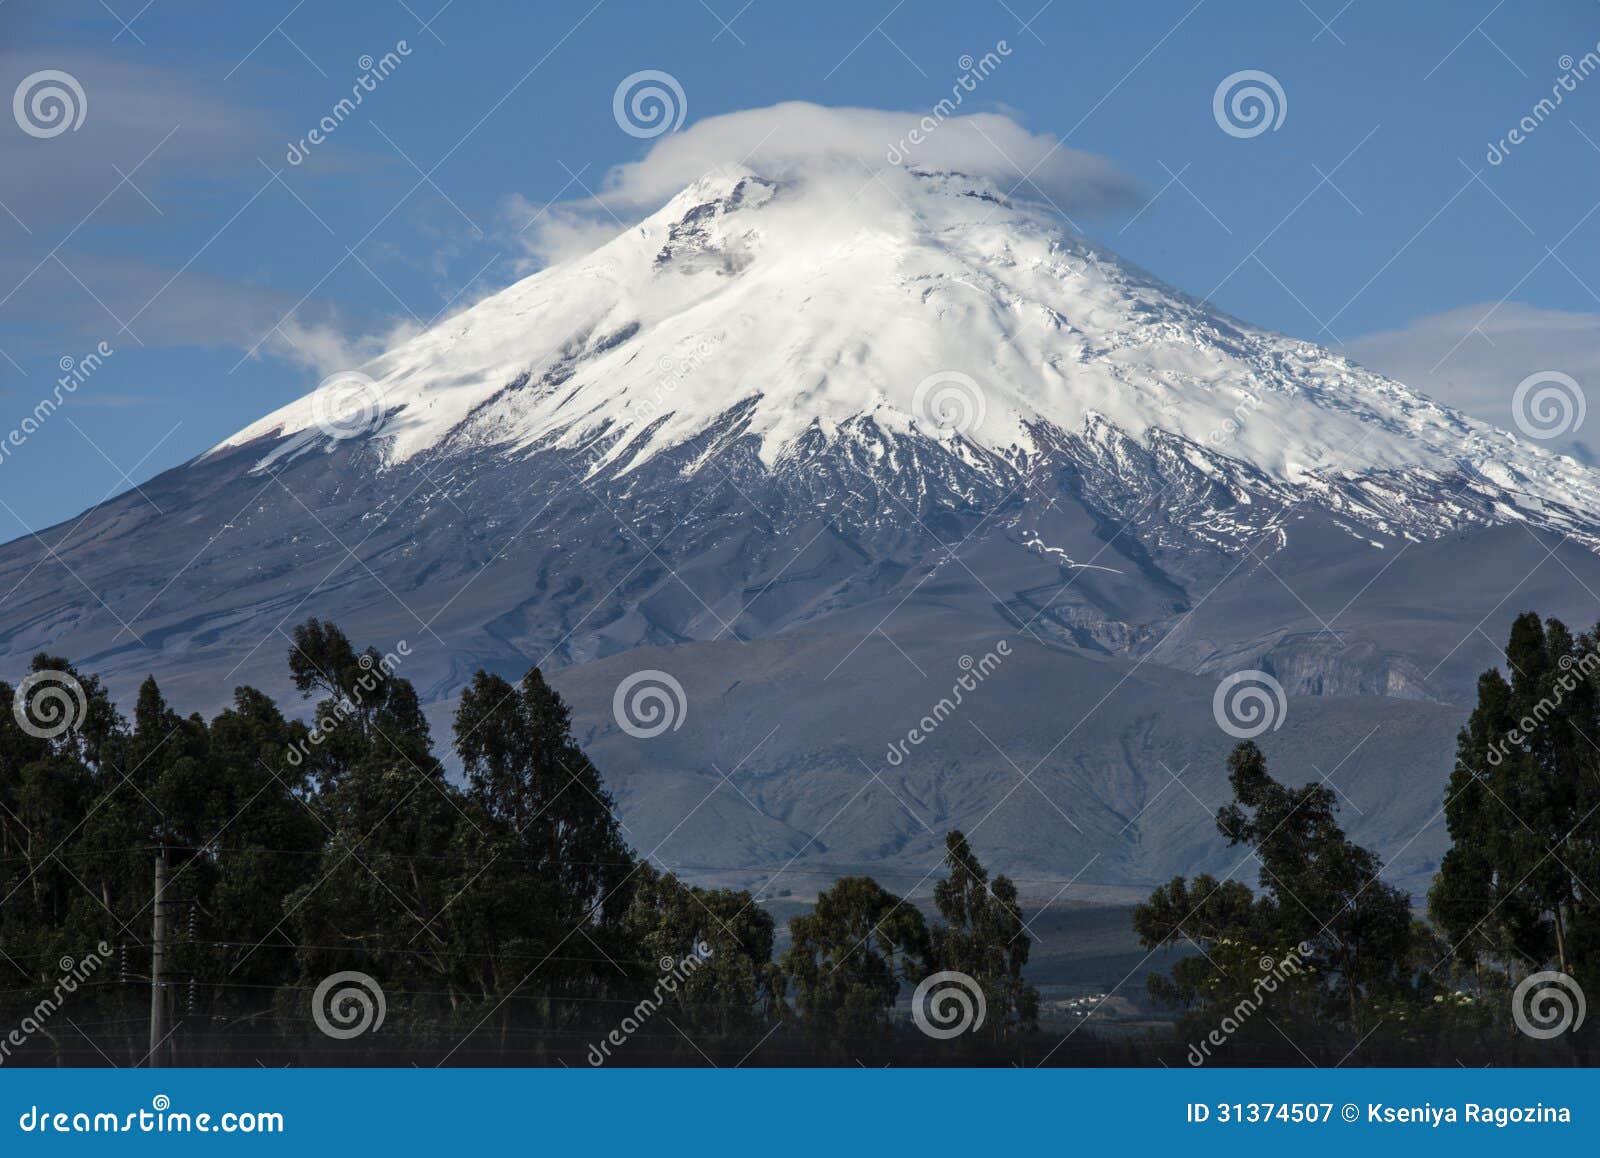 cotopaxi volcano, andean highlands of ecuador